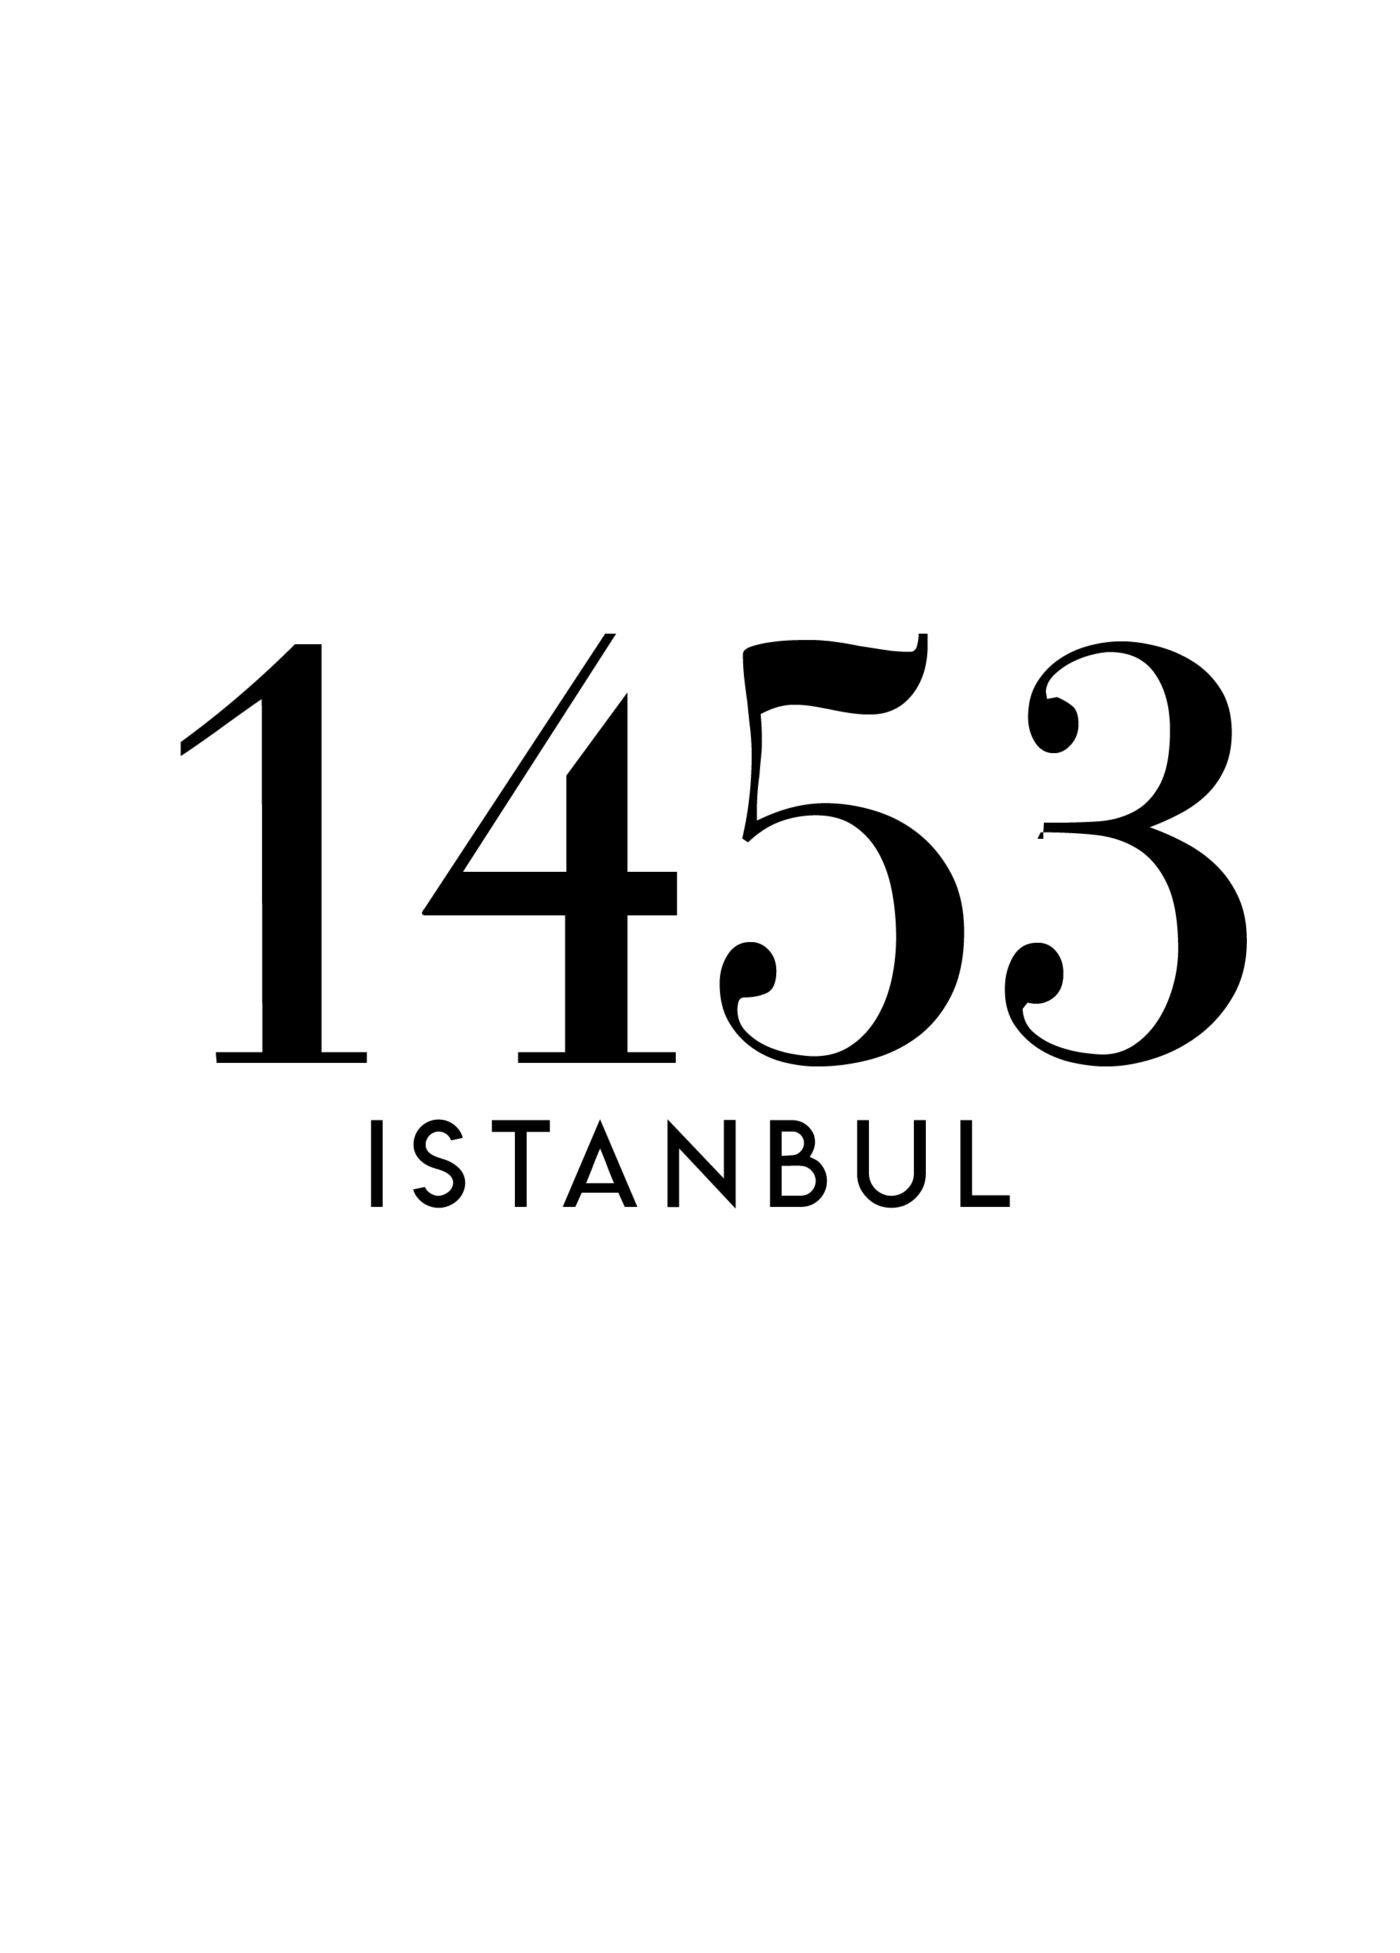 1453 Istanbul Zeichenfläche 1 tutkum.de